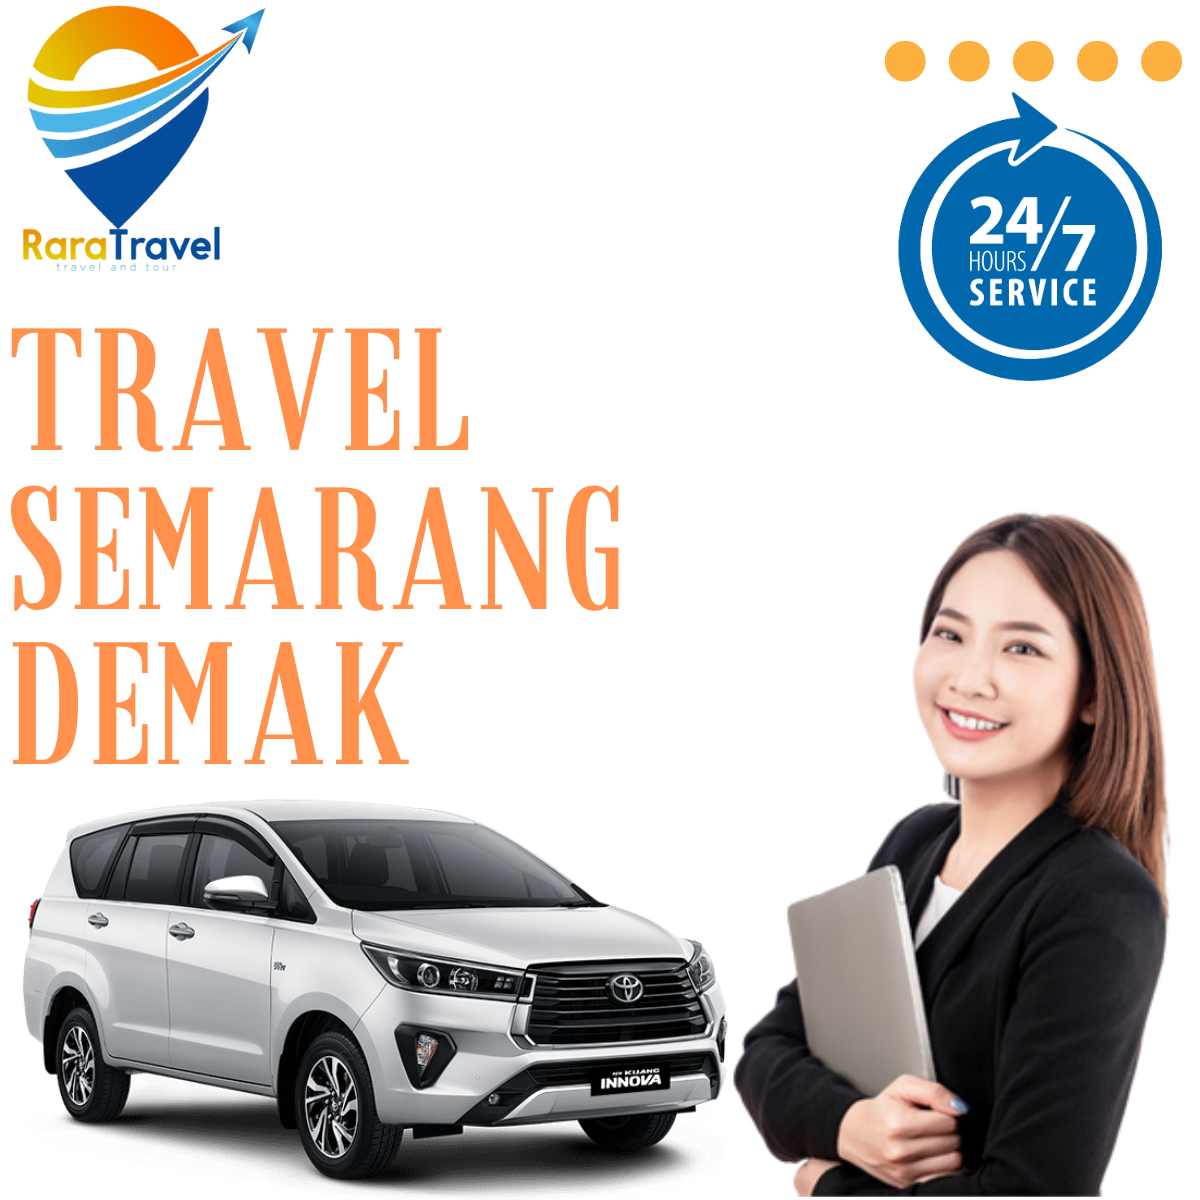 Travel Semarang Demak PP Harga Tiket Murah Layanan 24 Jam